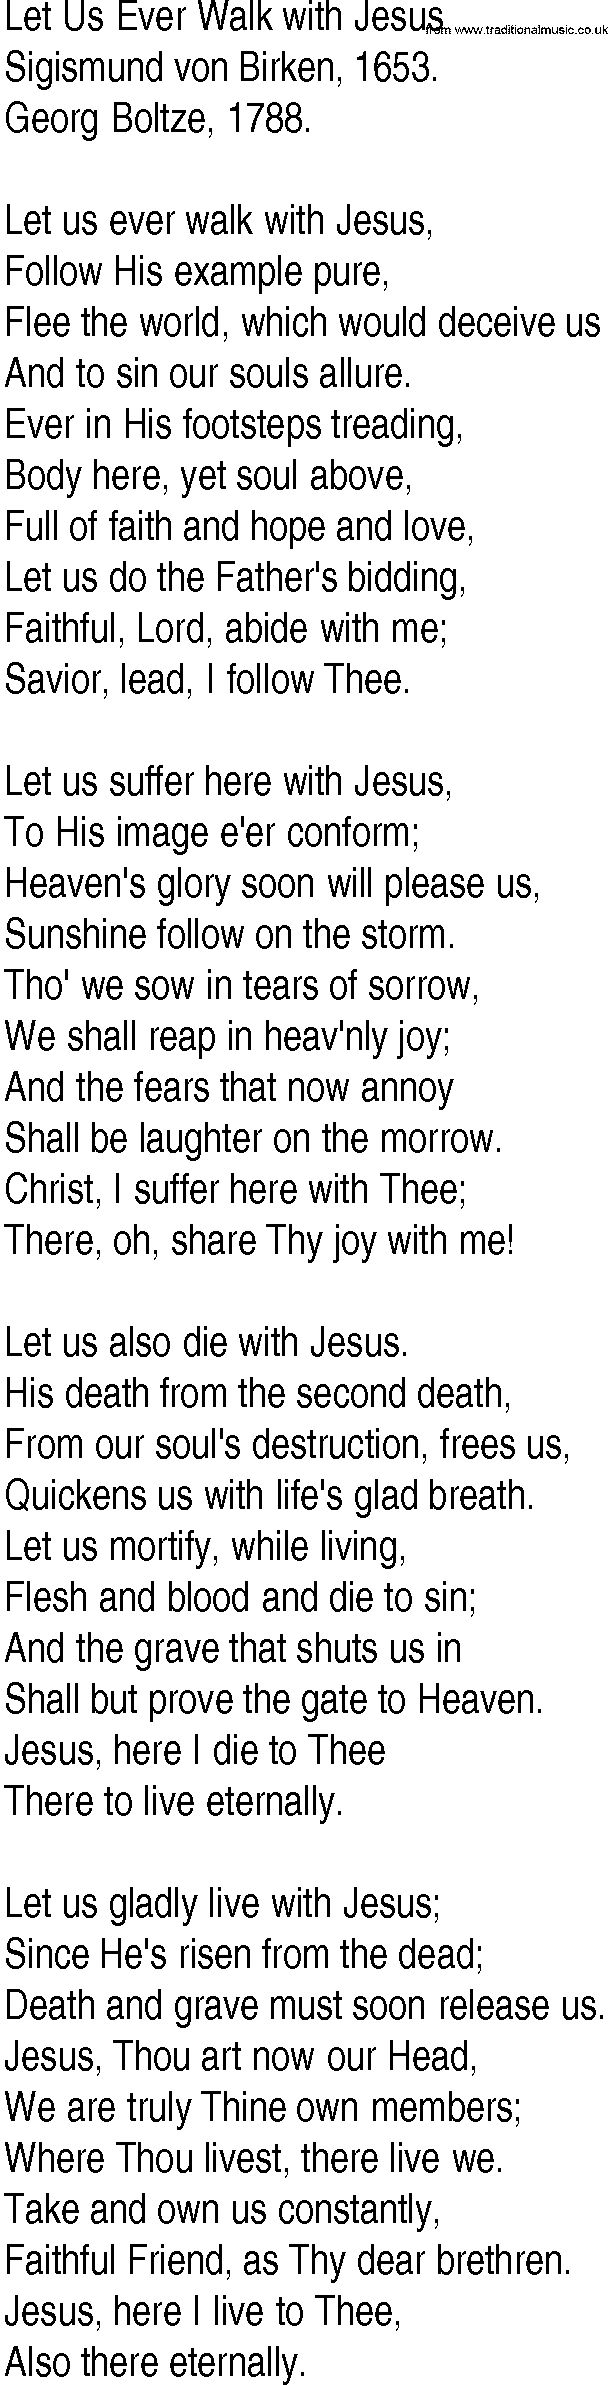 Hymn and Gospel Song: Let Us Ever Walk with Jesus by Sigismund von Birken lyrics